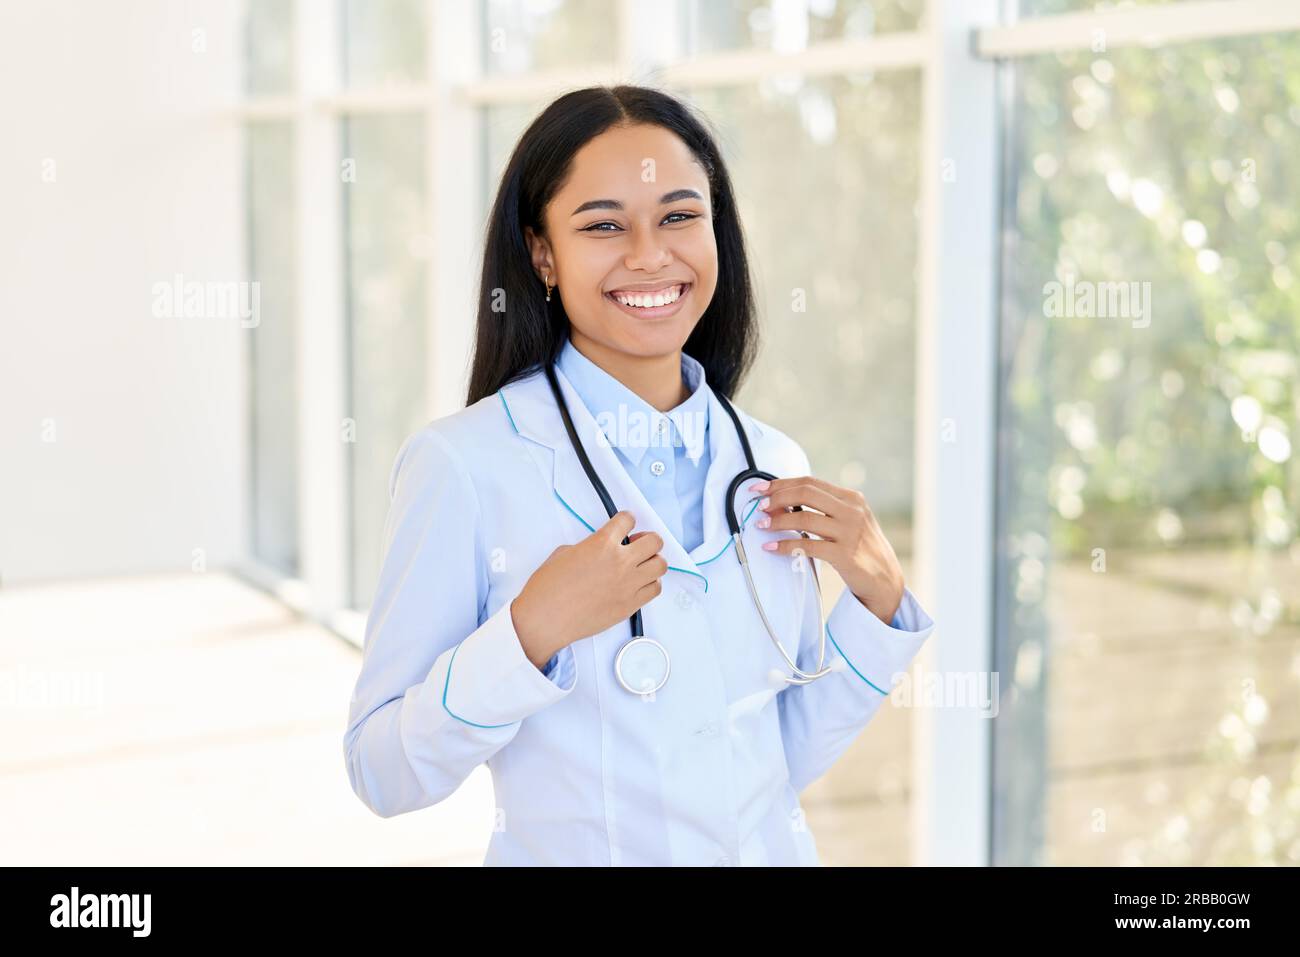 Glücklich lächelnd afroamerikanische Ärztin Porträt im Krankenhaus. Medizin, Beruf und Gesundheitswesen Konzept Stockfoto